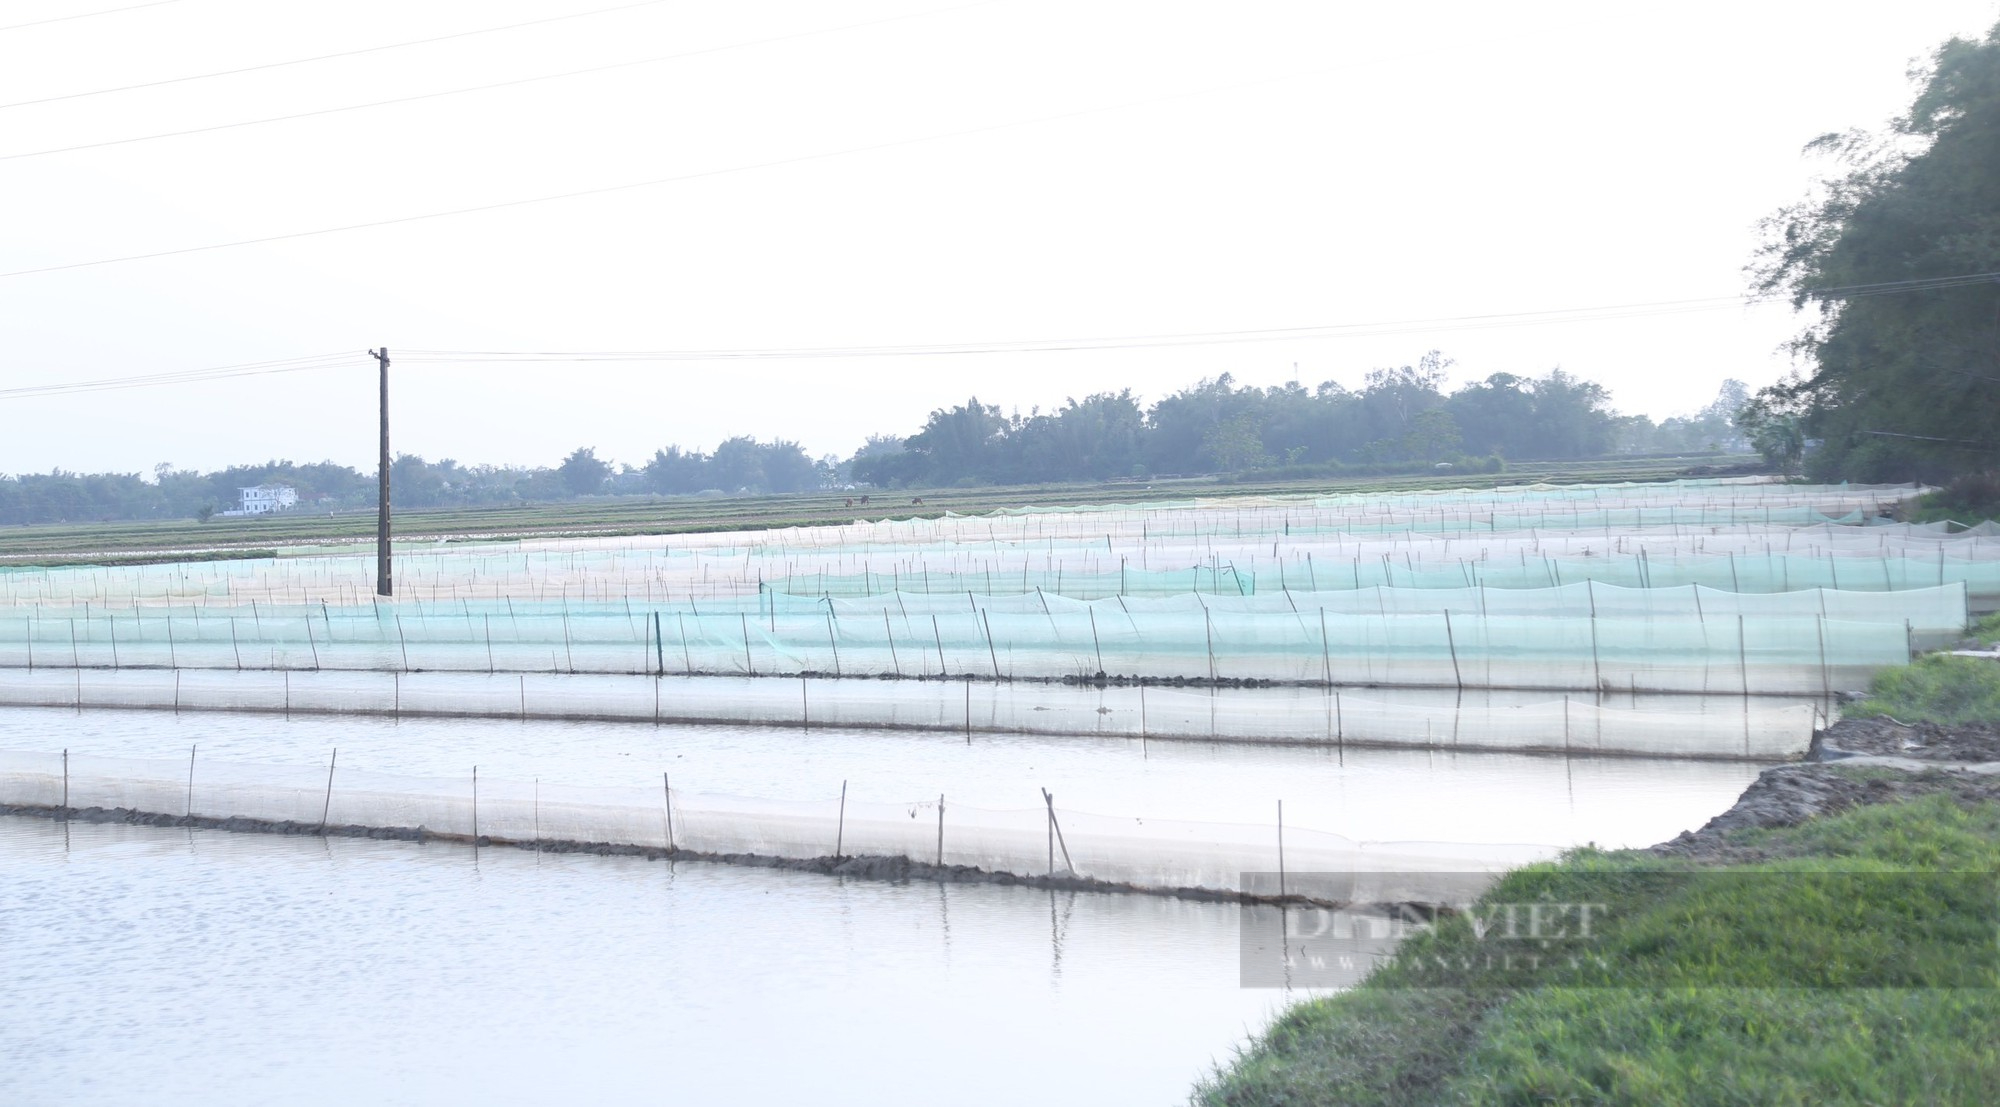 Nông dân vùng hạ du sông Lam giăng lưới kín ruộng để chờ điều bất ngờ từ loài đặc sản có giá đắt đỏ - Ảnh 1.